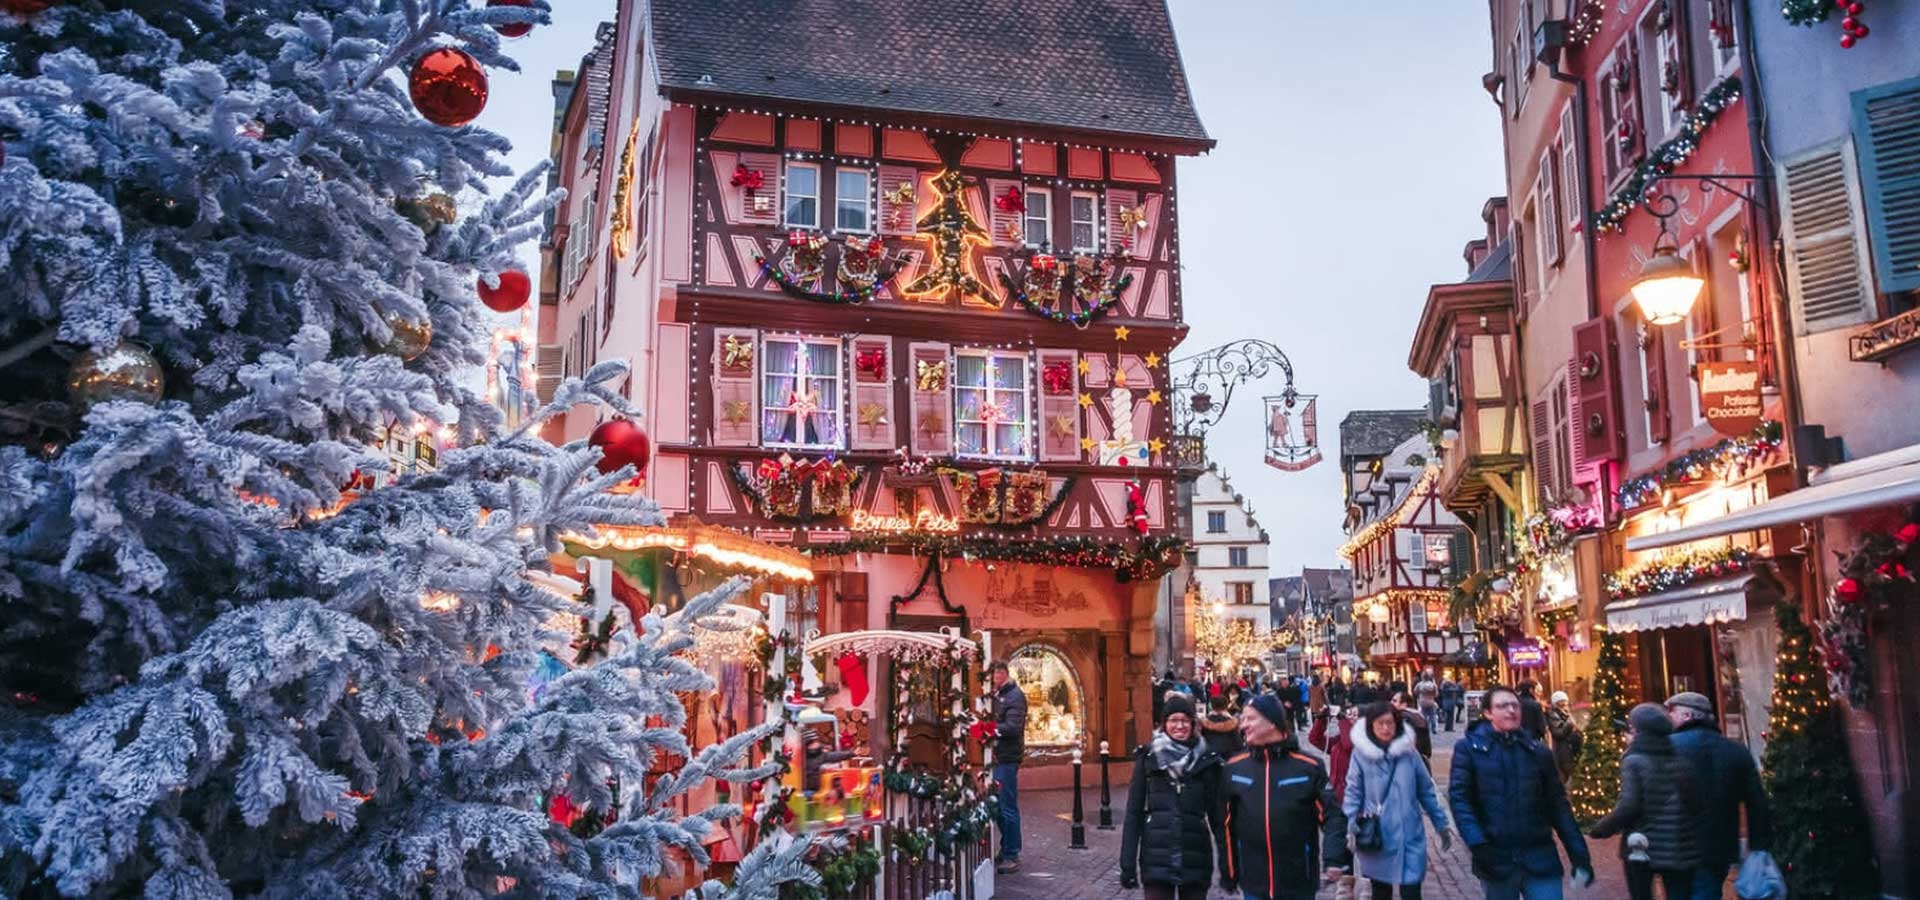 In de pittoreske straatjes van Colmar zal de kerstversieringen en lichten je meeslepen in de magie van de kerstperiode.